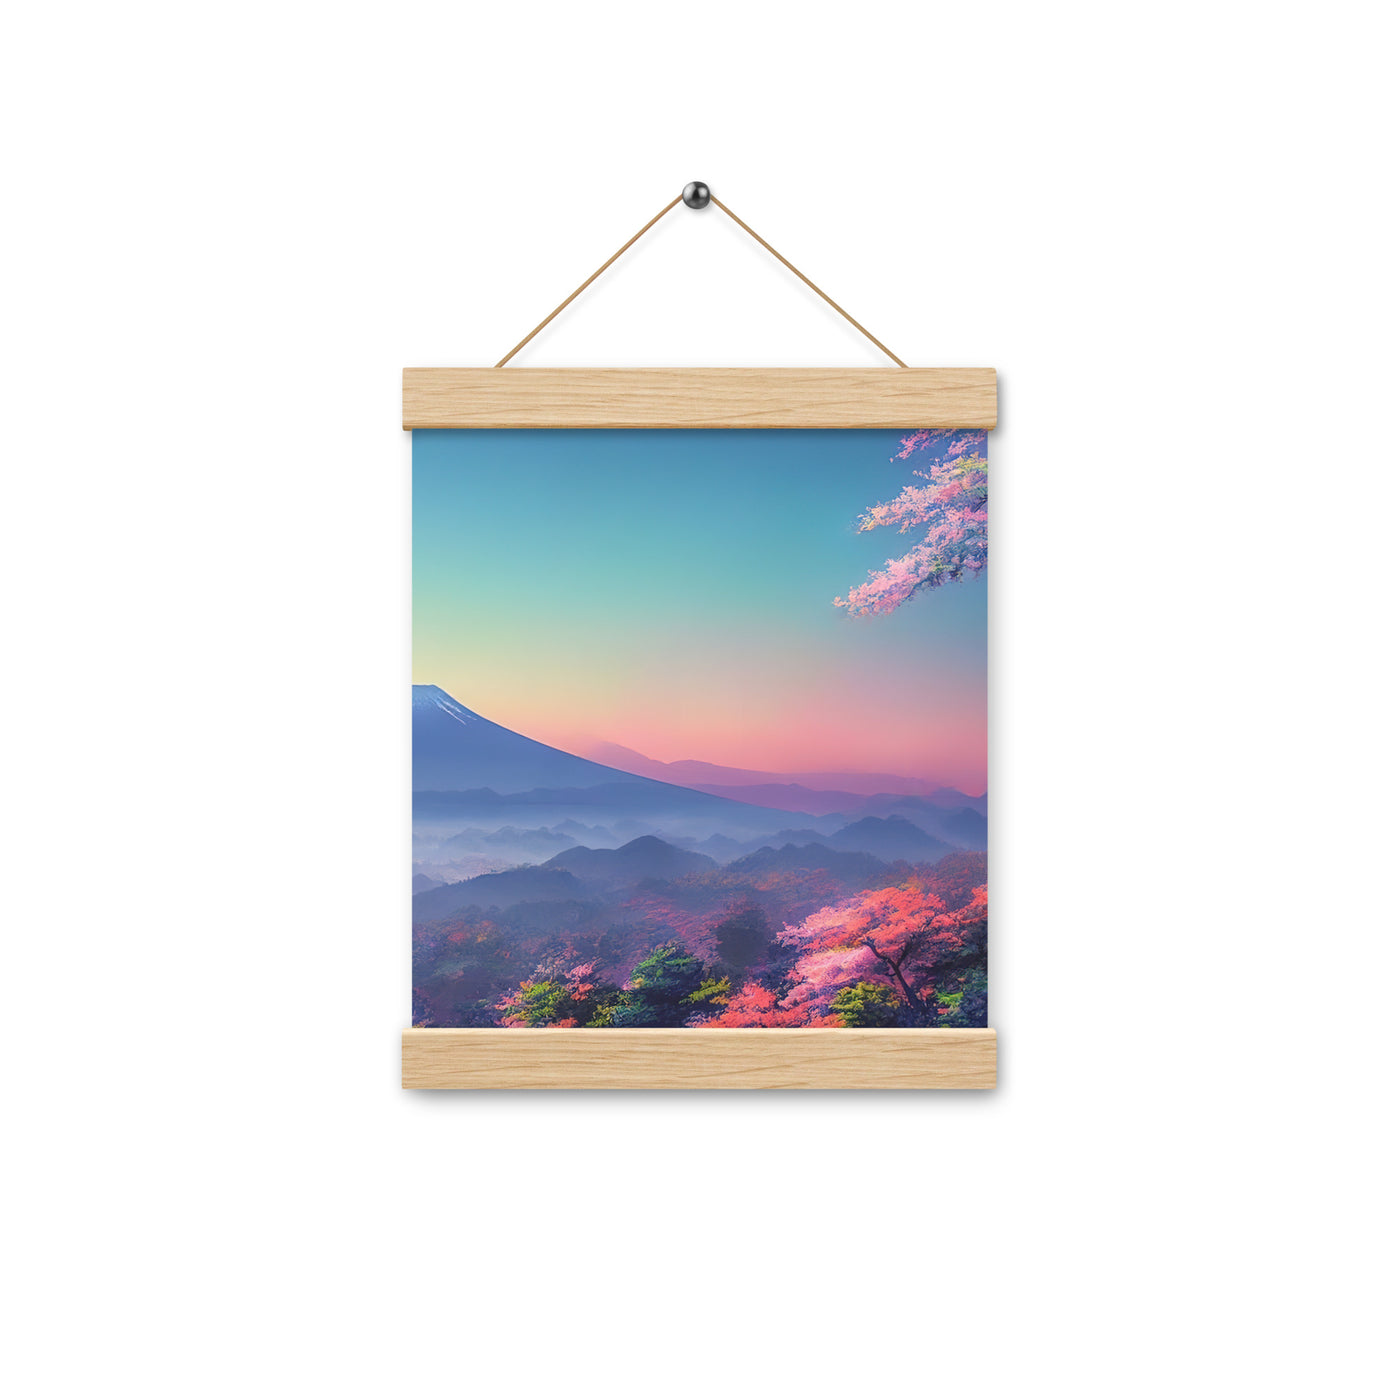 Berg und Wald mit pinken Bäumen - Landschaftsmalerei - Premium Poster mit Aufhängung berge xxx Oak 20.3 x 25.4 cm